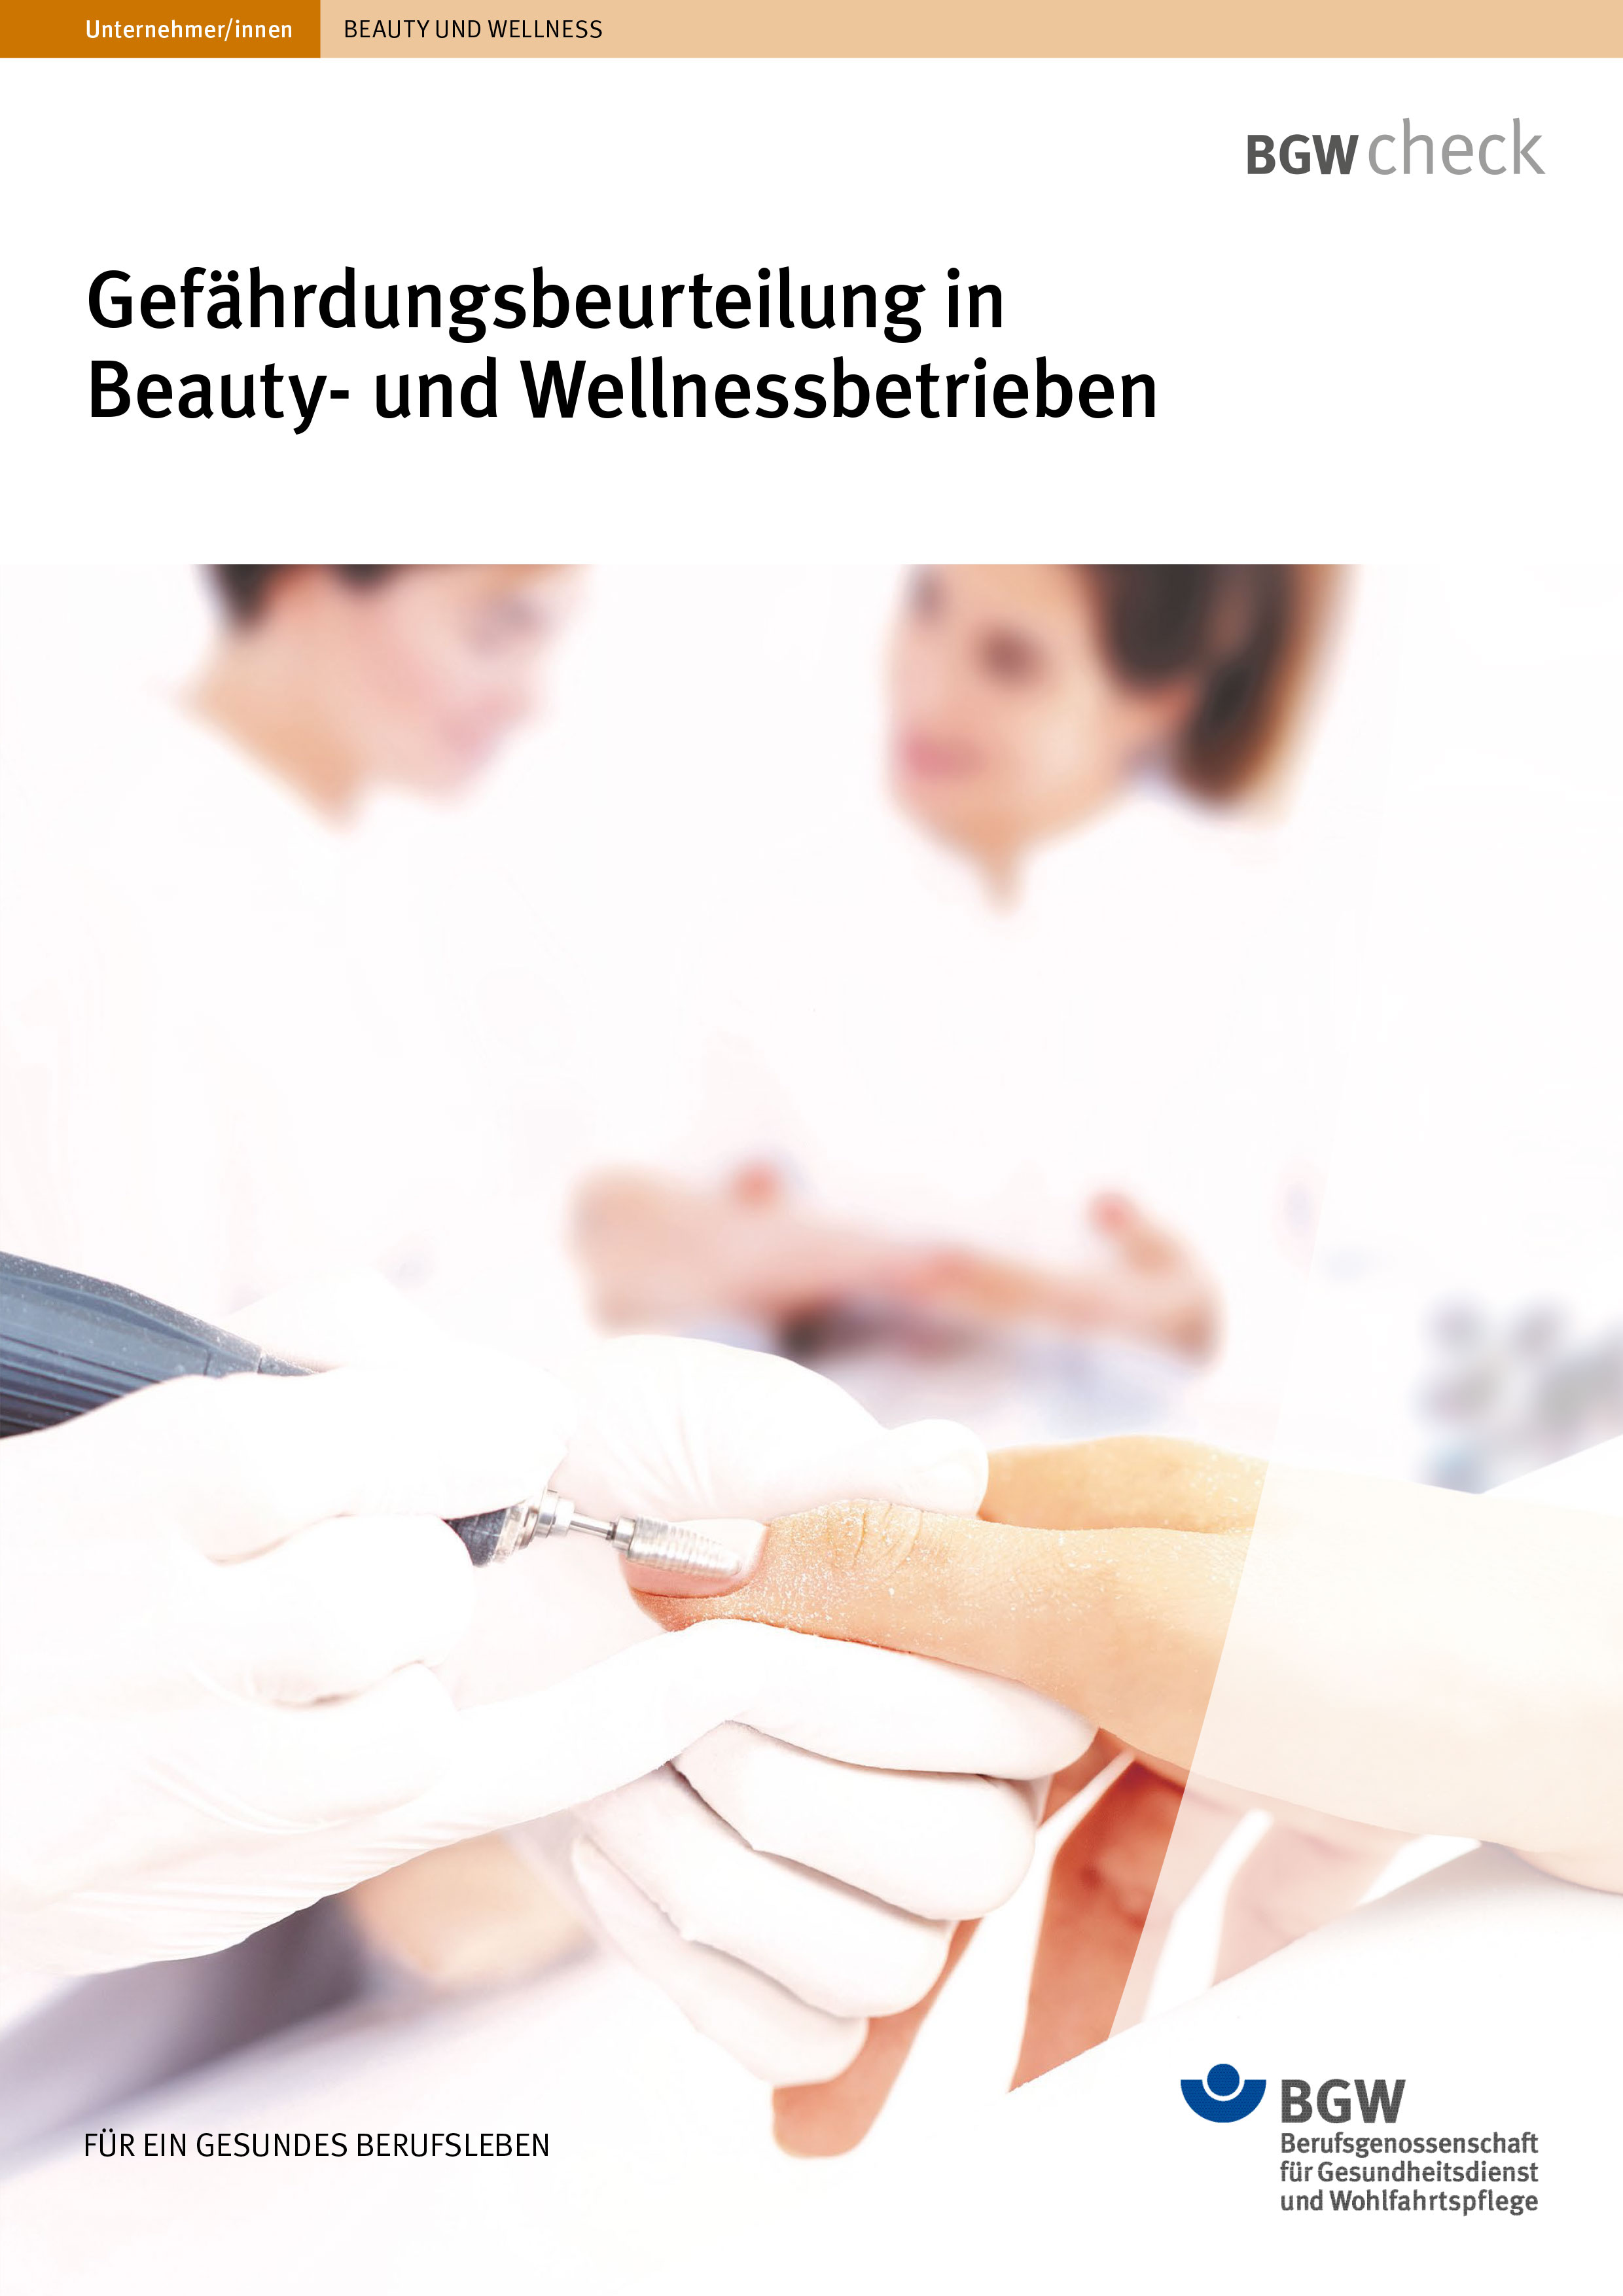 Titel: "Gefährdungsbeurteilung in Beauty- und Wellnessbetrieben"